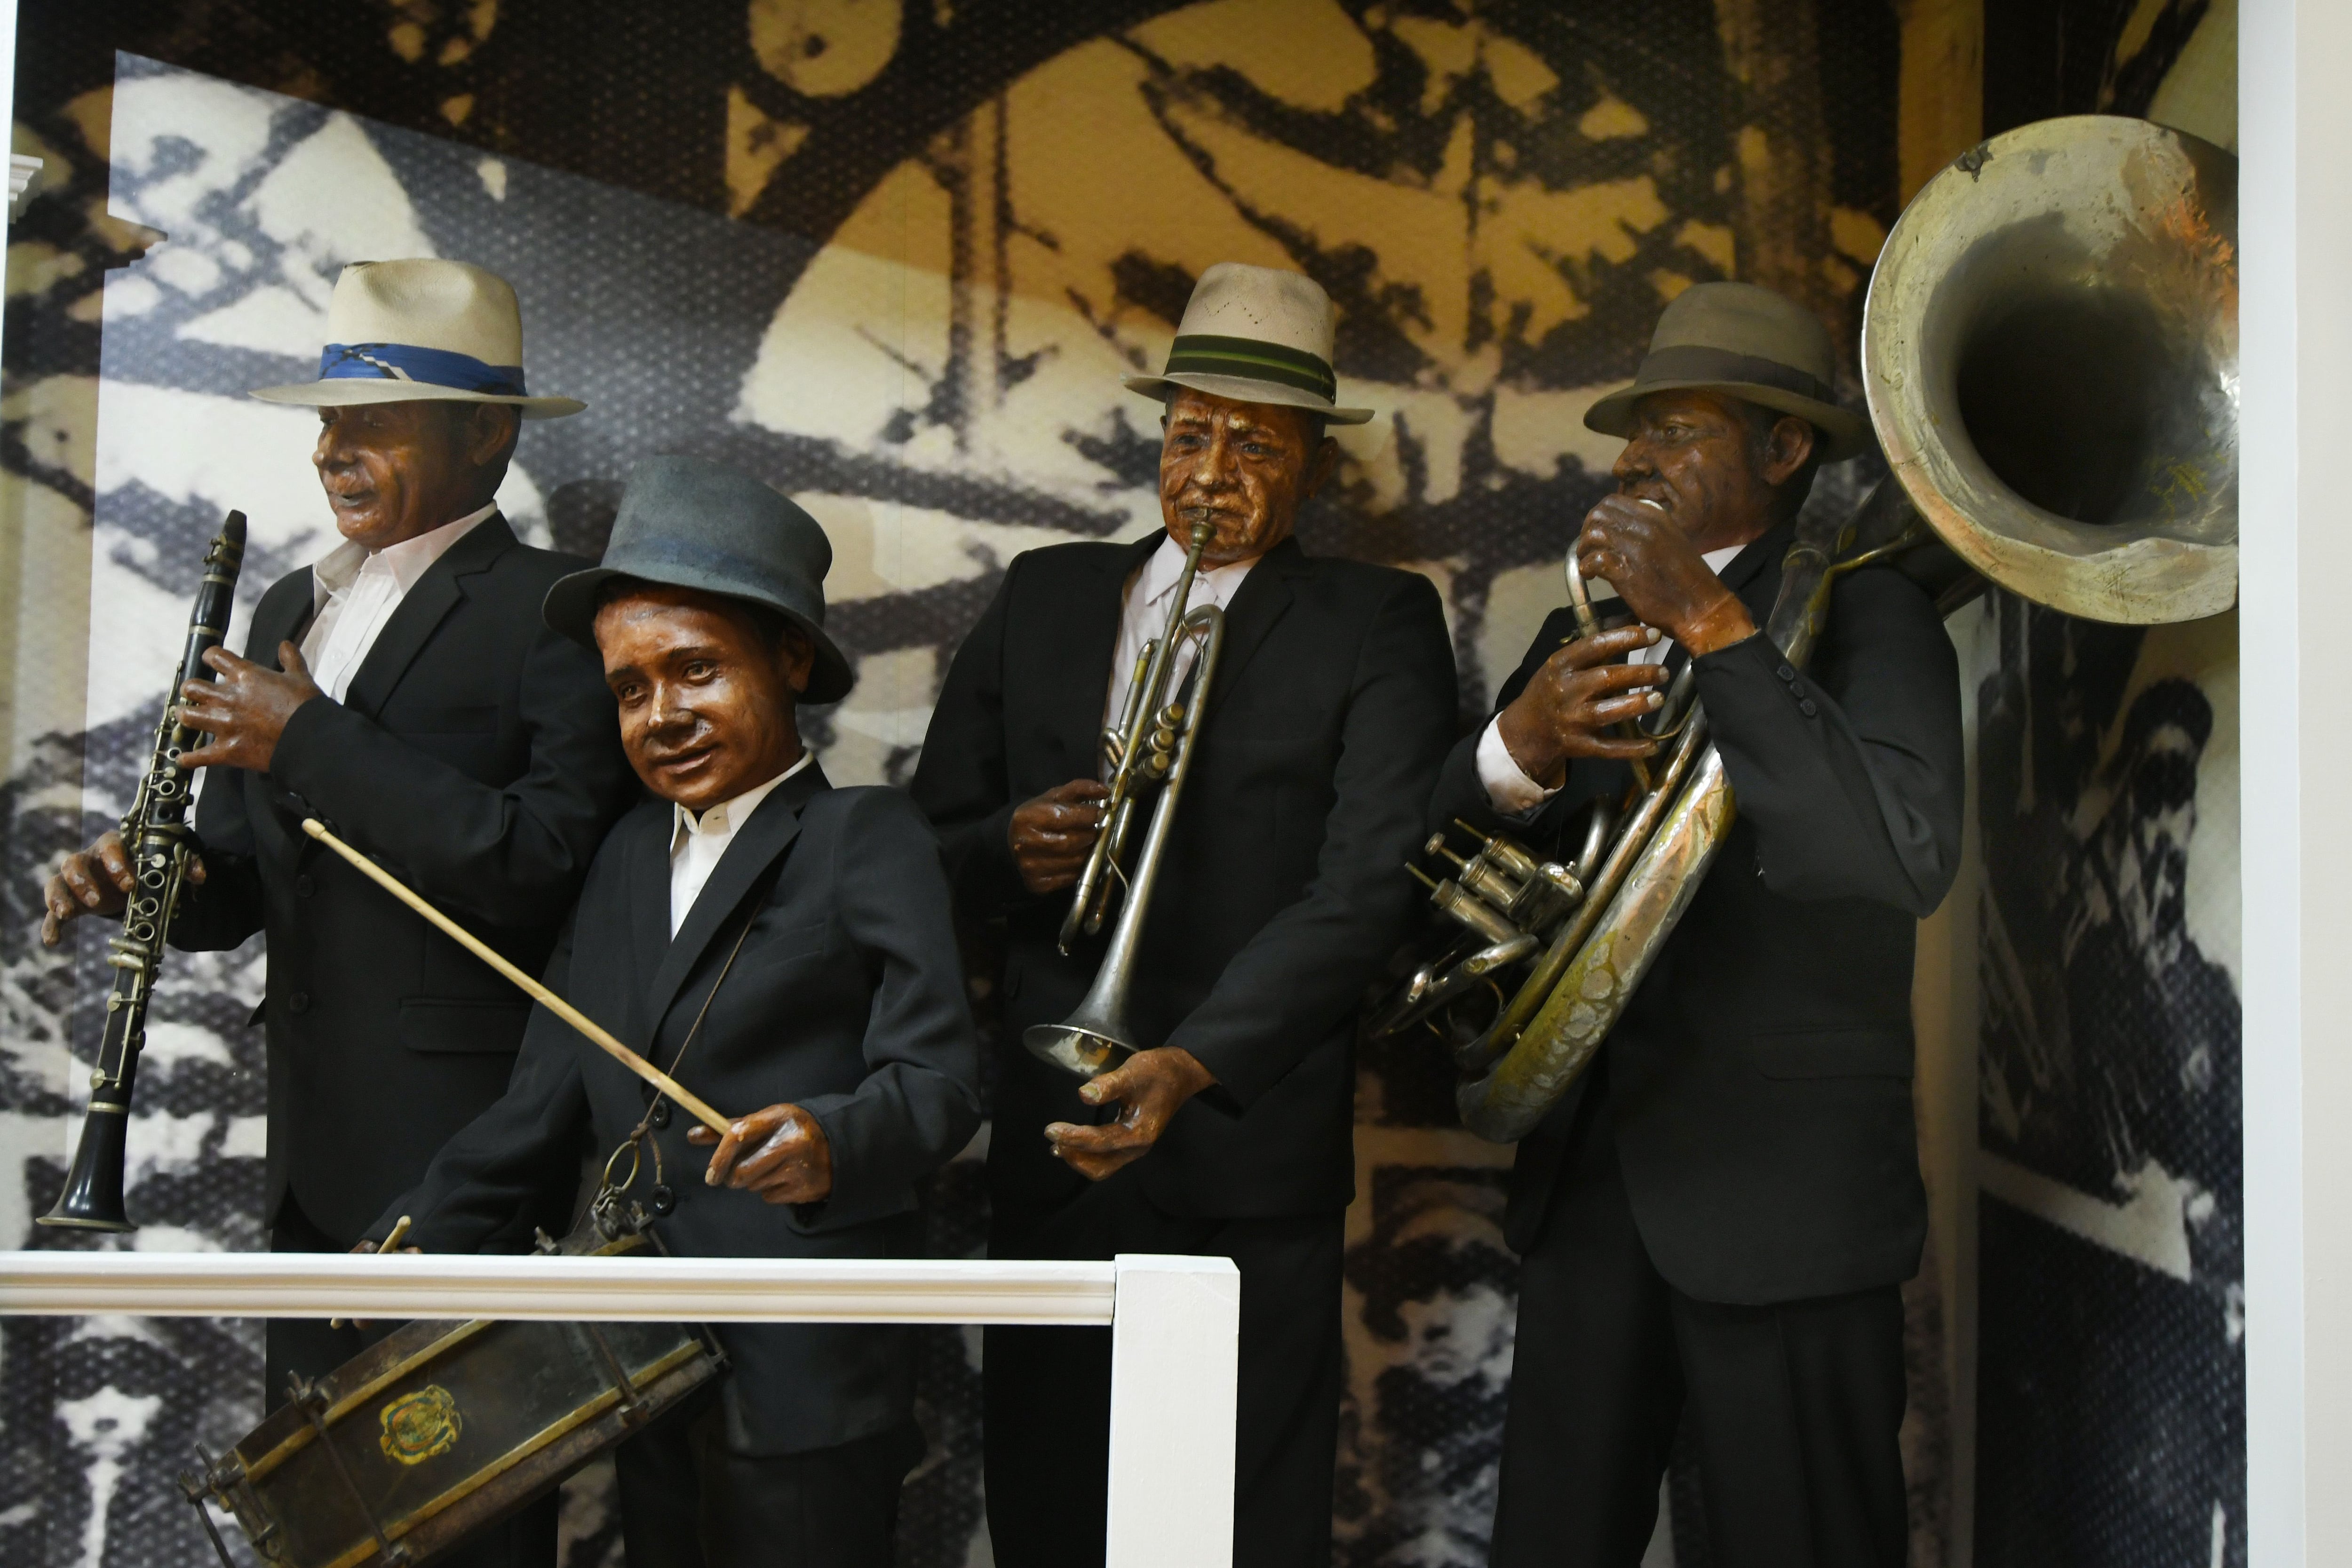 La música y el baile serán protagonistas del carnaval en Quito